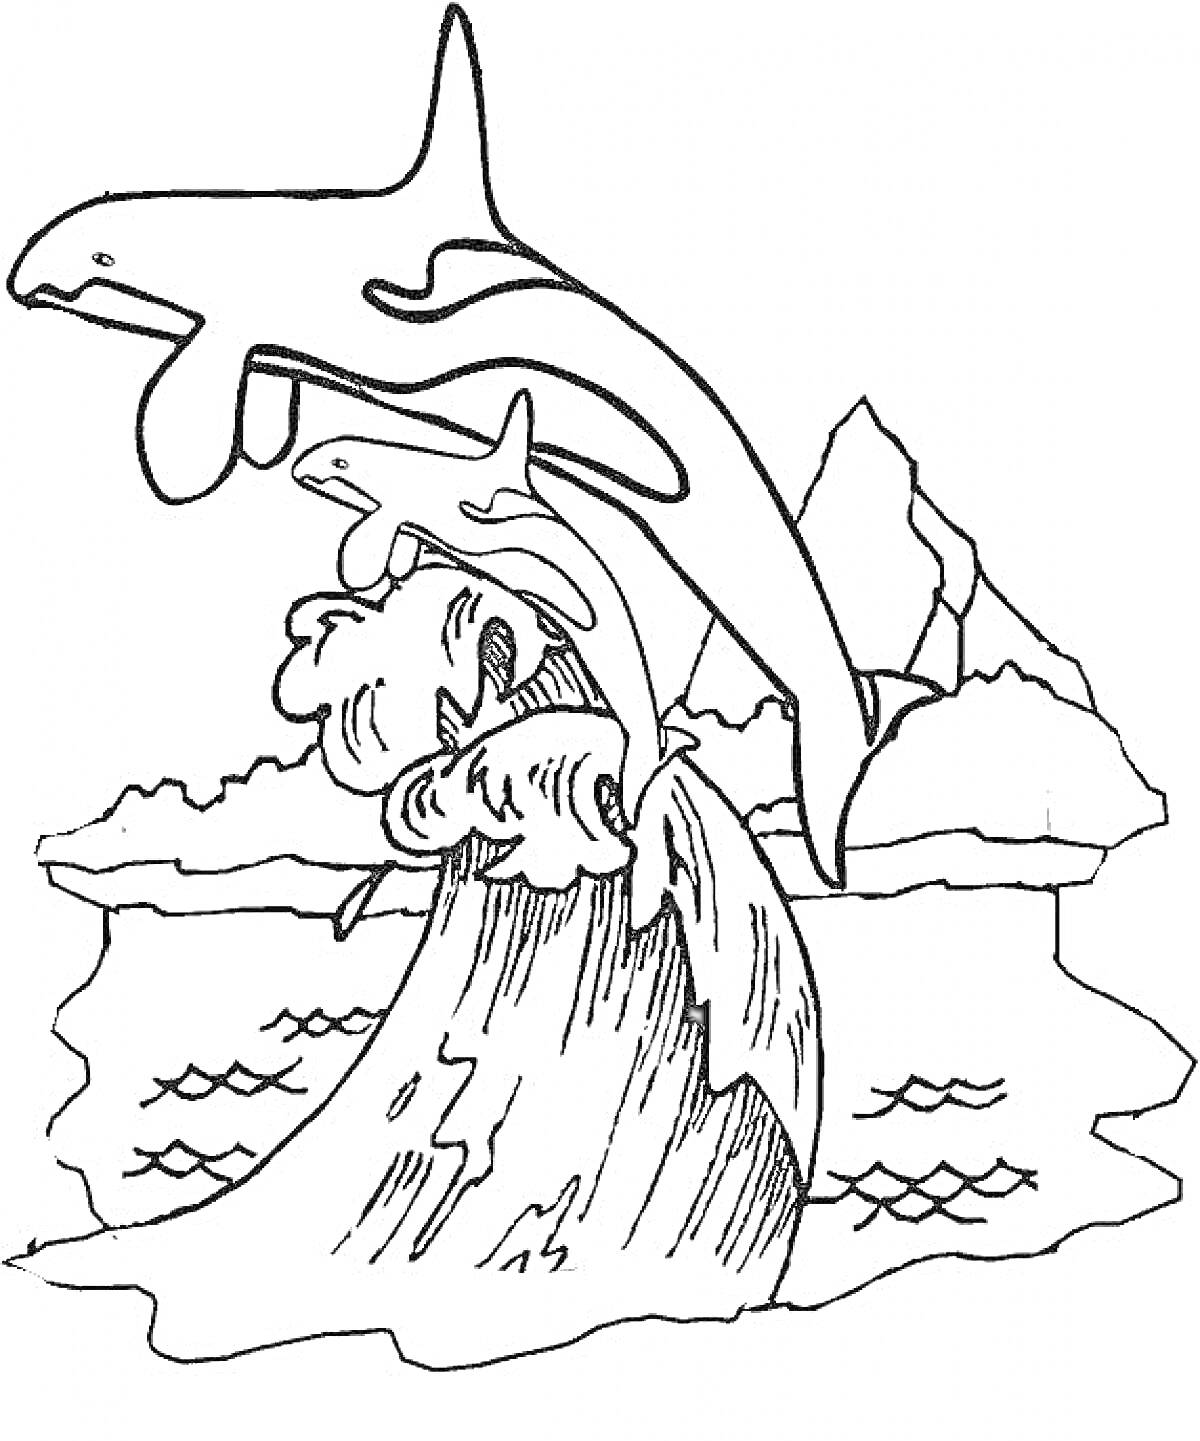 Косатка, плавающая рядом с волнами и скалами